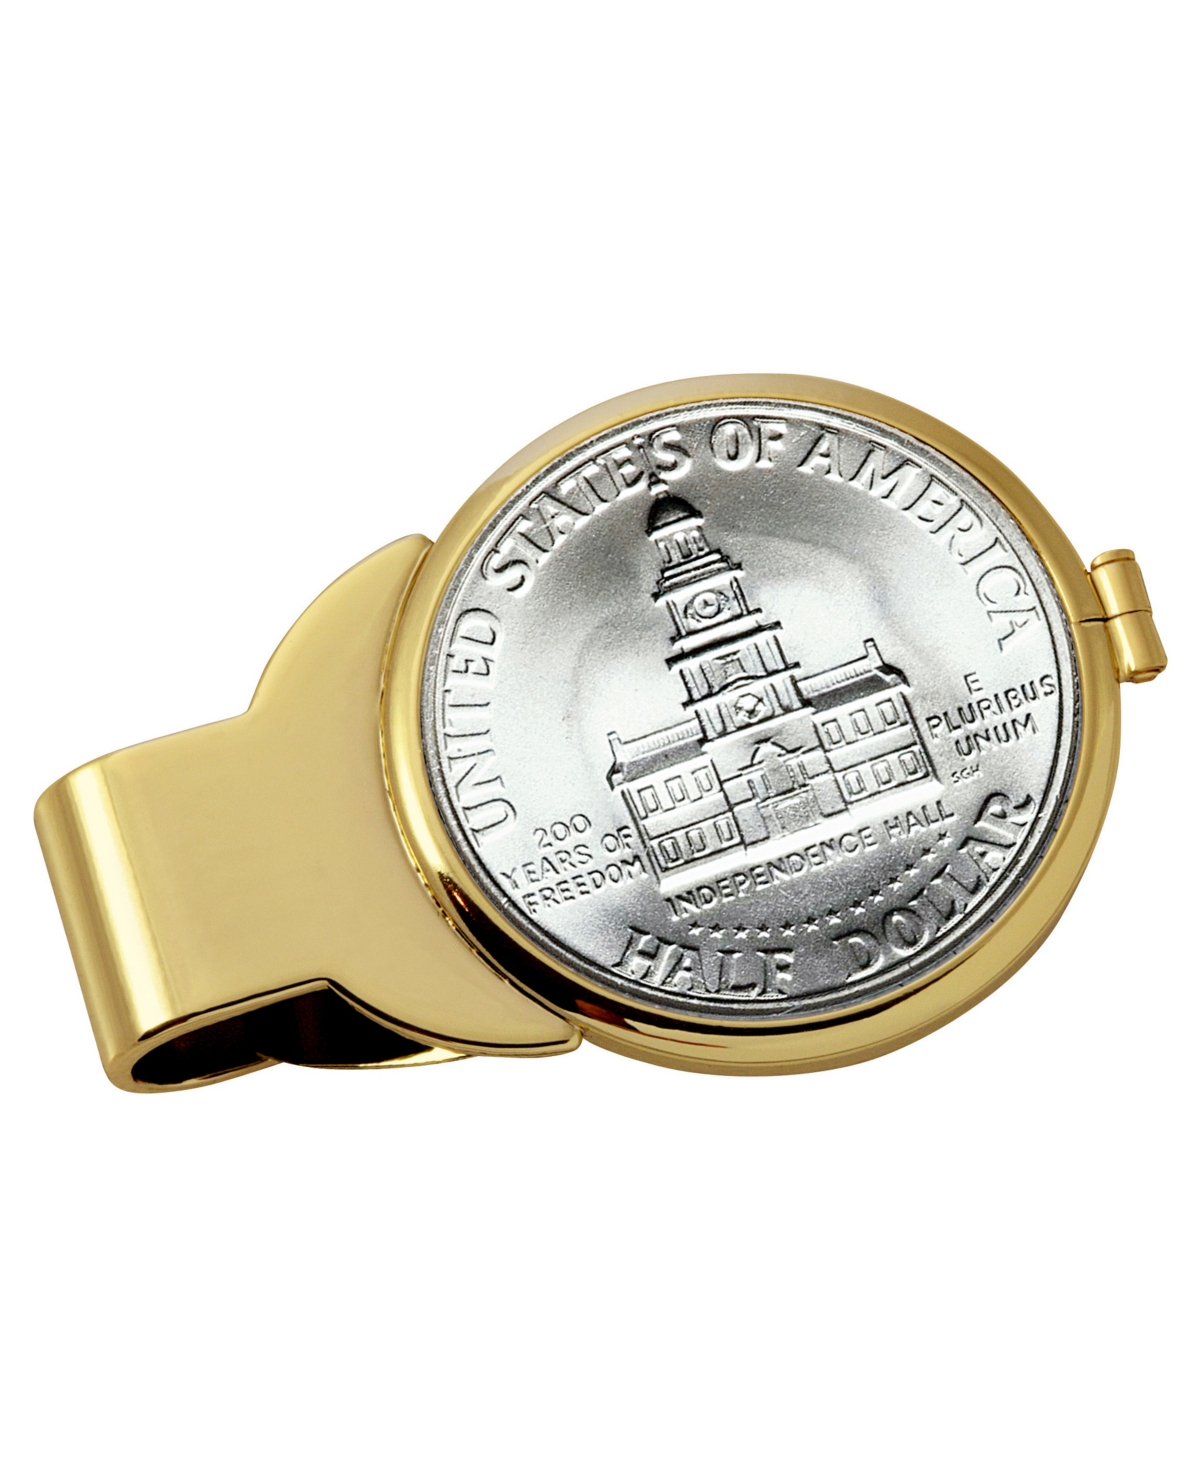 Men's American Coin Treasures Jfk Bicentennial Half Dollar Coin Money Clip - Gold